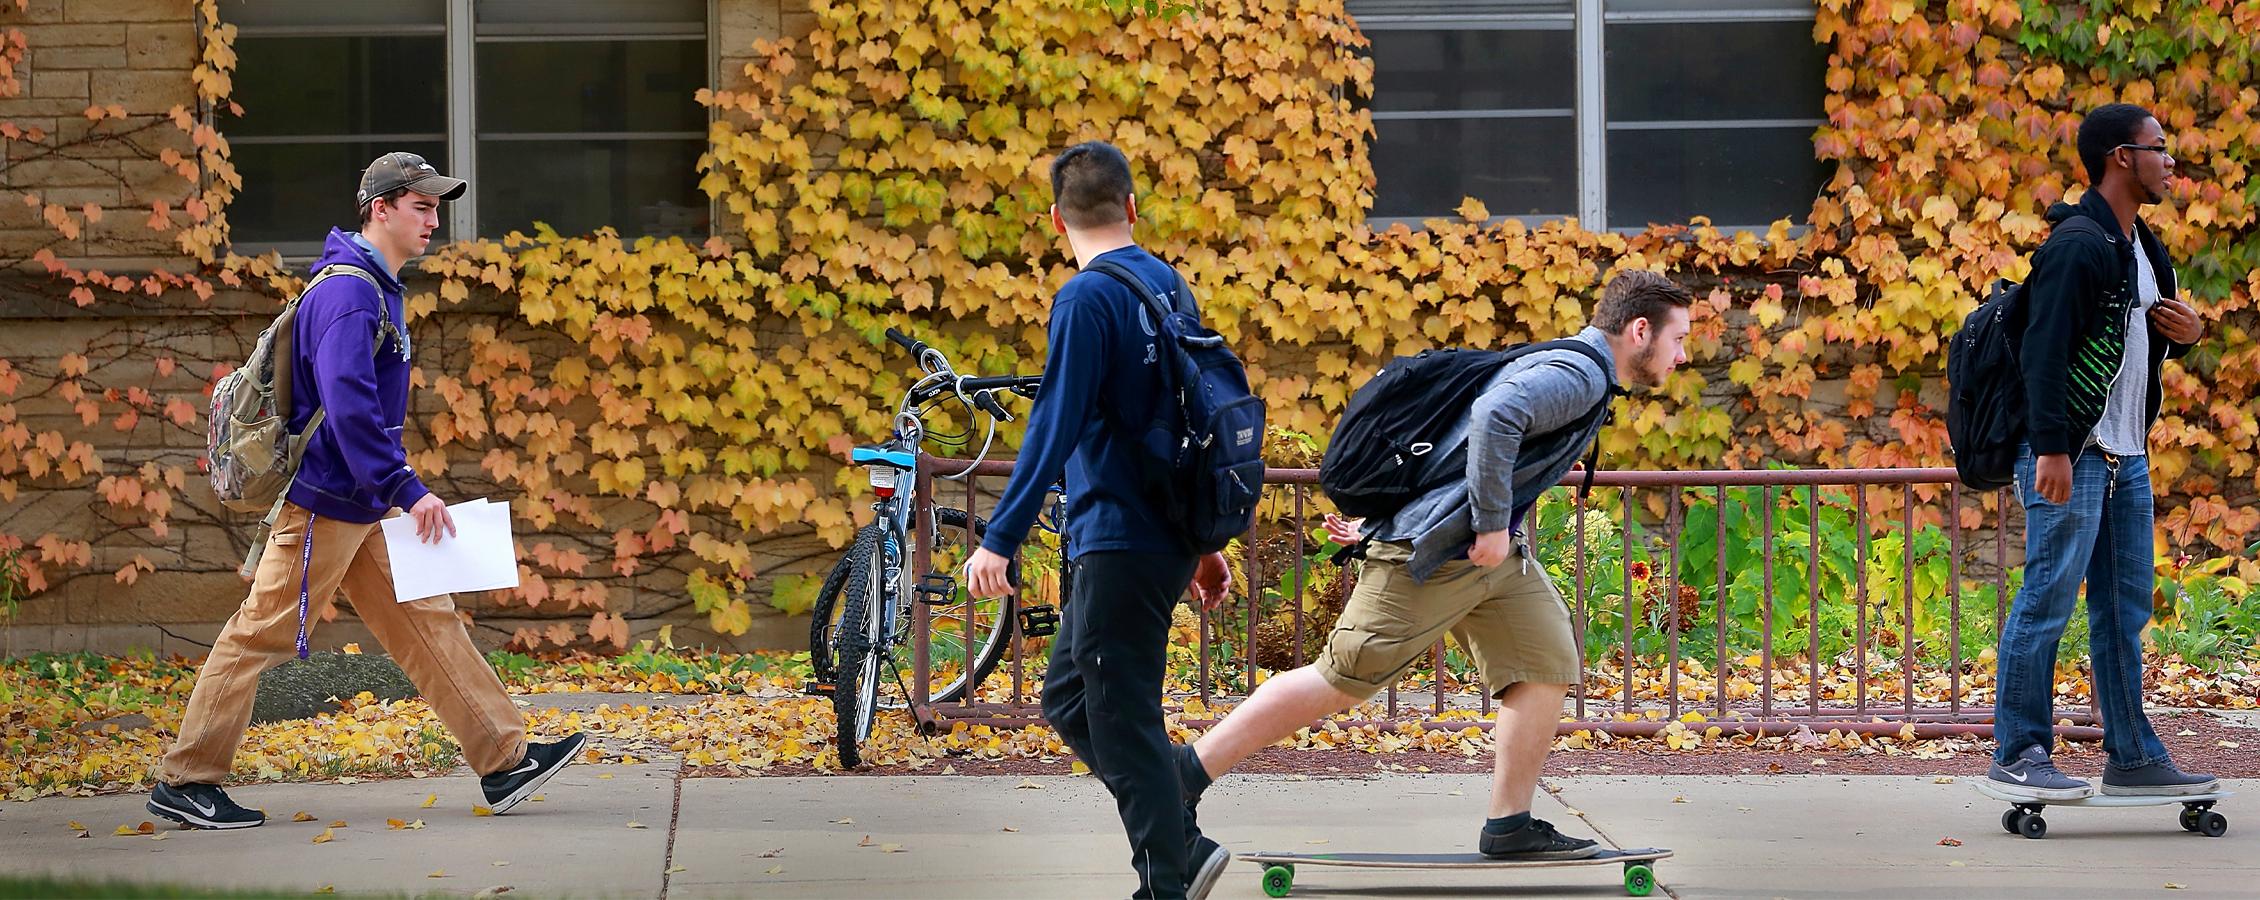 学生们在人行道上滑滑板，背景是黄色的树叶和落叶.